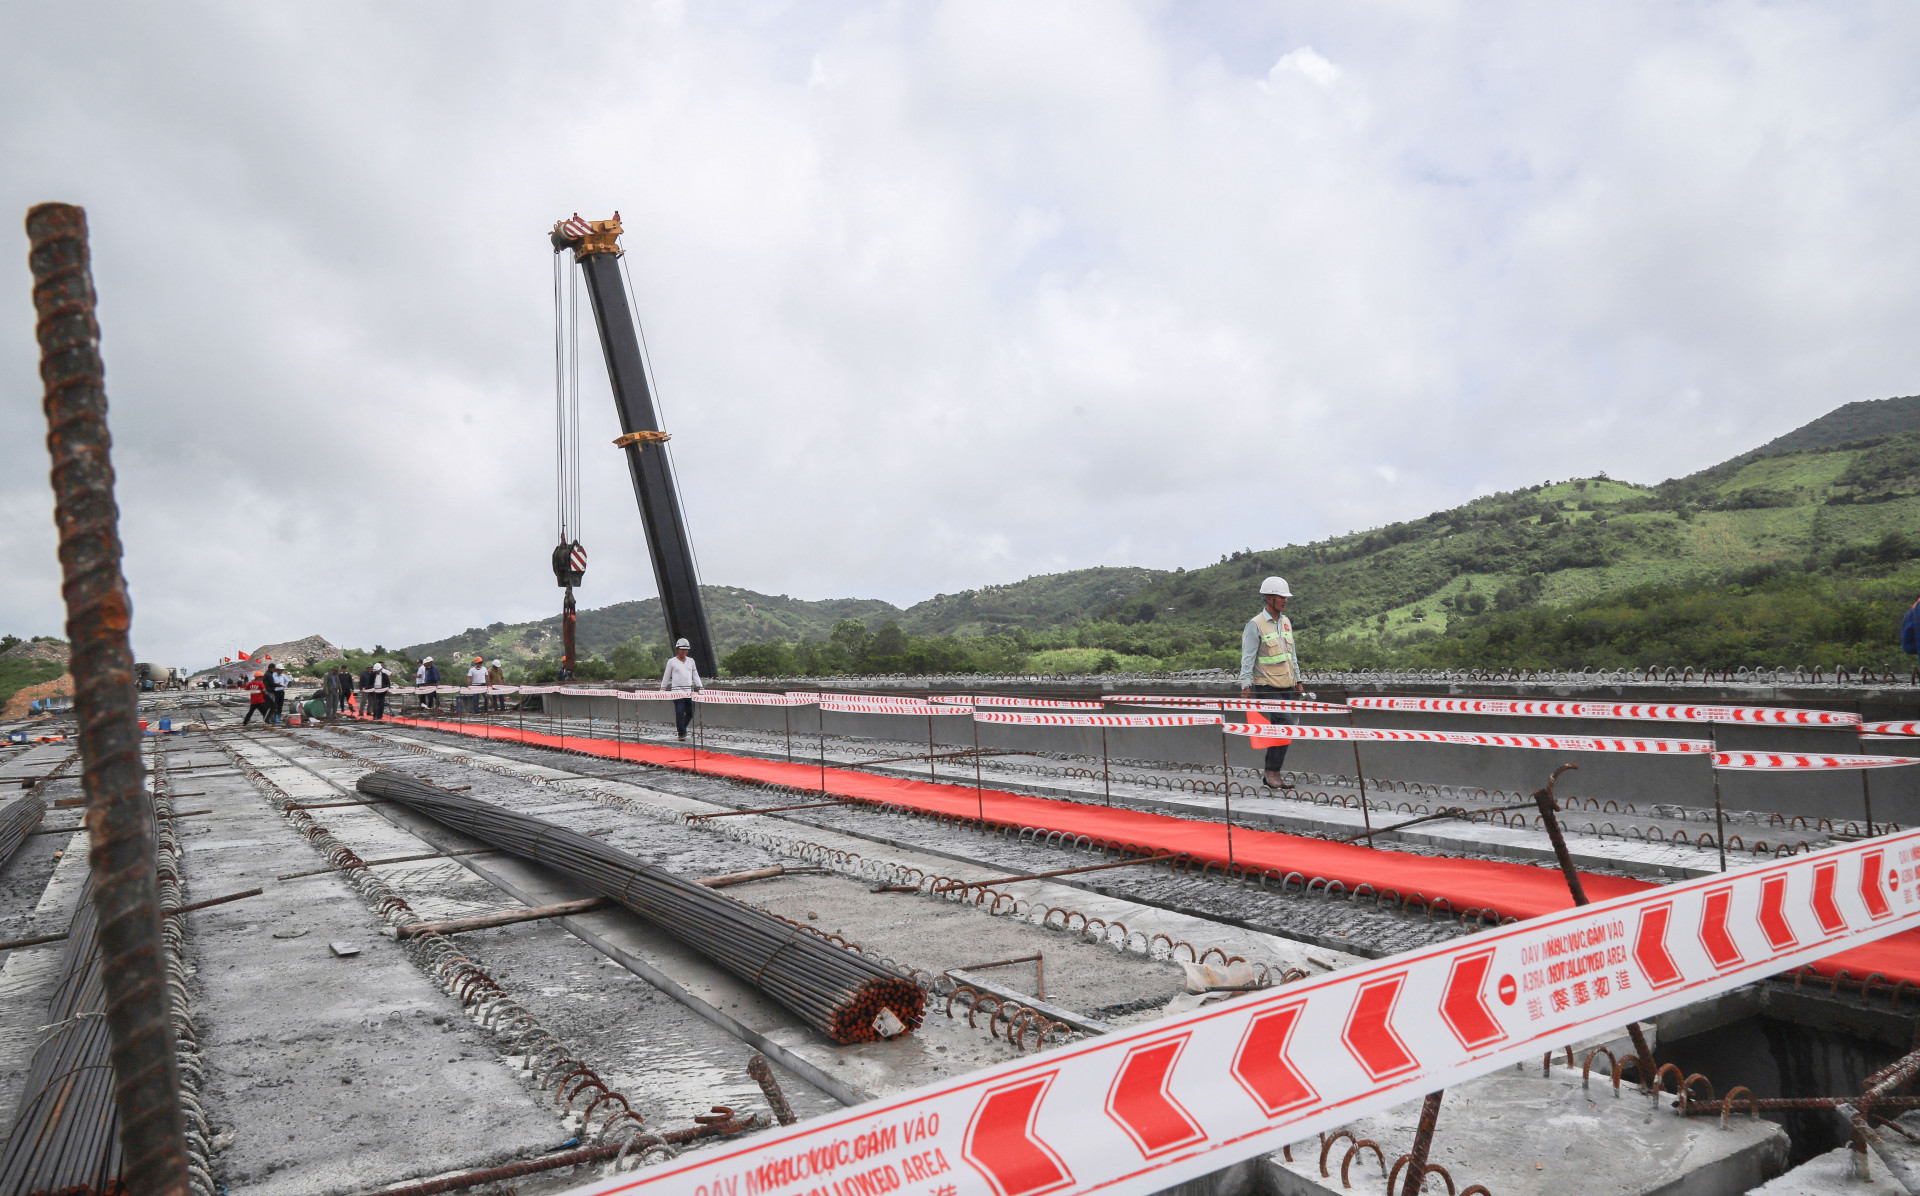 Dự án cao tốc Cam Lâm - Vĩnh Hảo có quy mô 13.687 tỷ, chiều dài tổng 78,5km đi qua 3 tỉnh Khánh Hòa – Ninh Thuận – Bình Thuận với tiến độ phần tuyến là 24 tháng, phần hầm là 30 tháng.  Dự án do Công ty Cổ phần Tổng công ty Đầu tư Xây dựng 194 thực hiện.